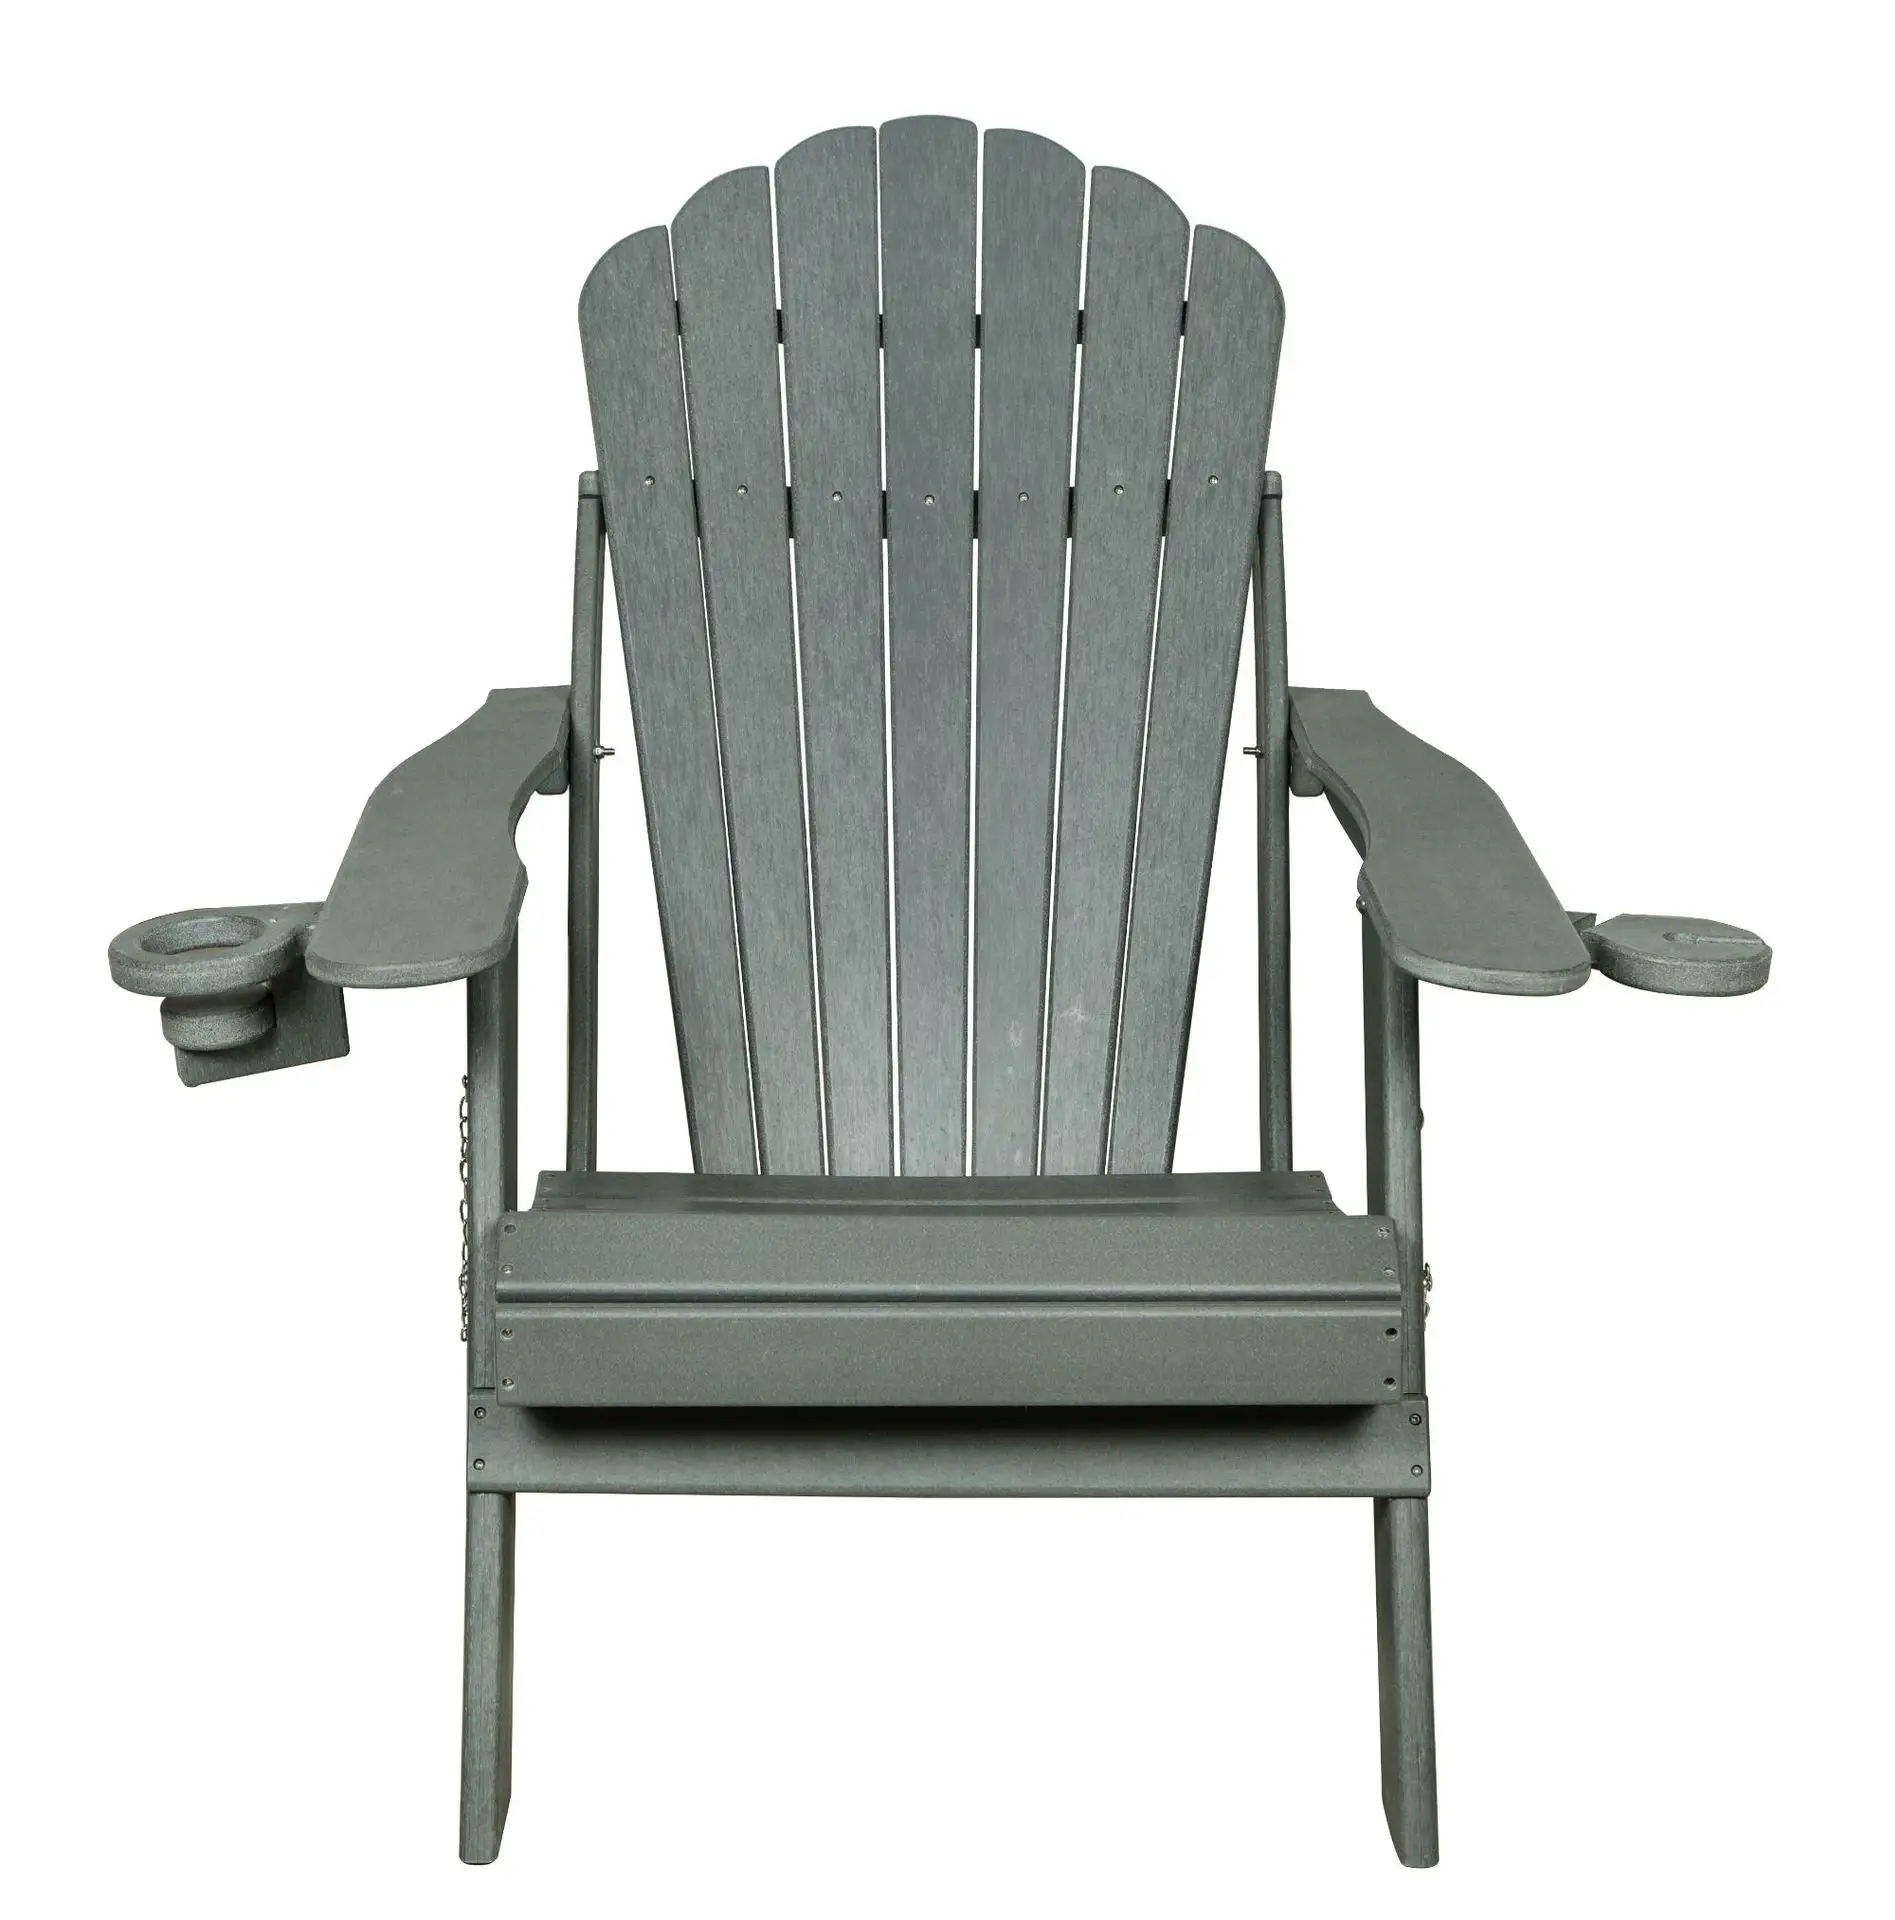 HDPE mobili da esterno sedia accento giardino spiaggia resistenza agli agenti atmosferici plastica riciclata Poly Adirondack Chair